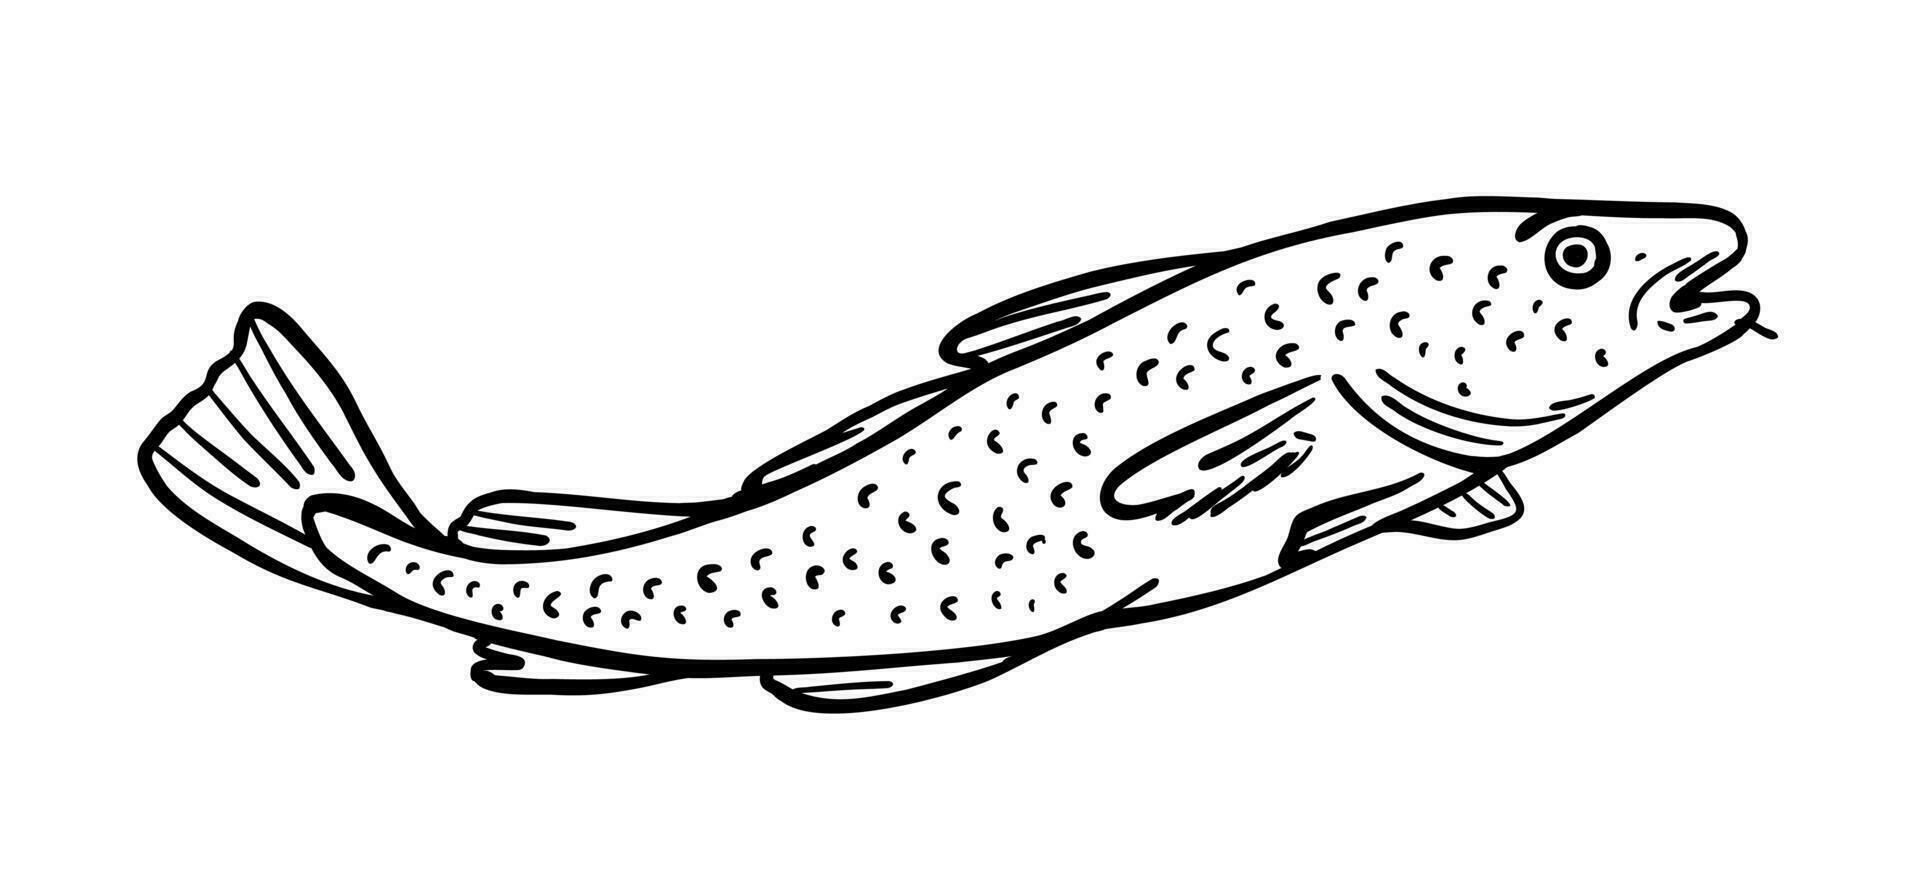 pescado es un residente de el mar. vector ilustración en garabatear estilo